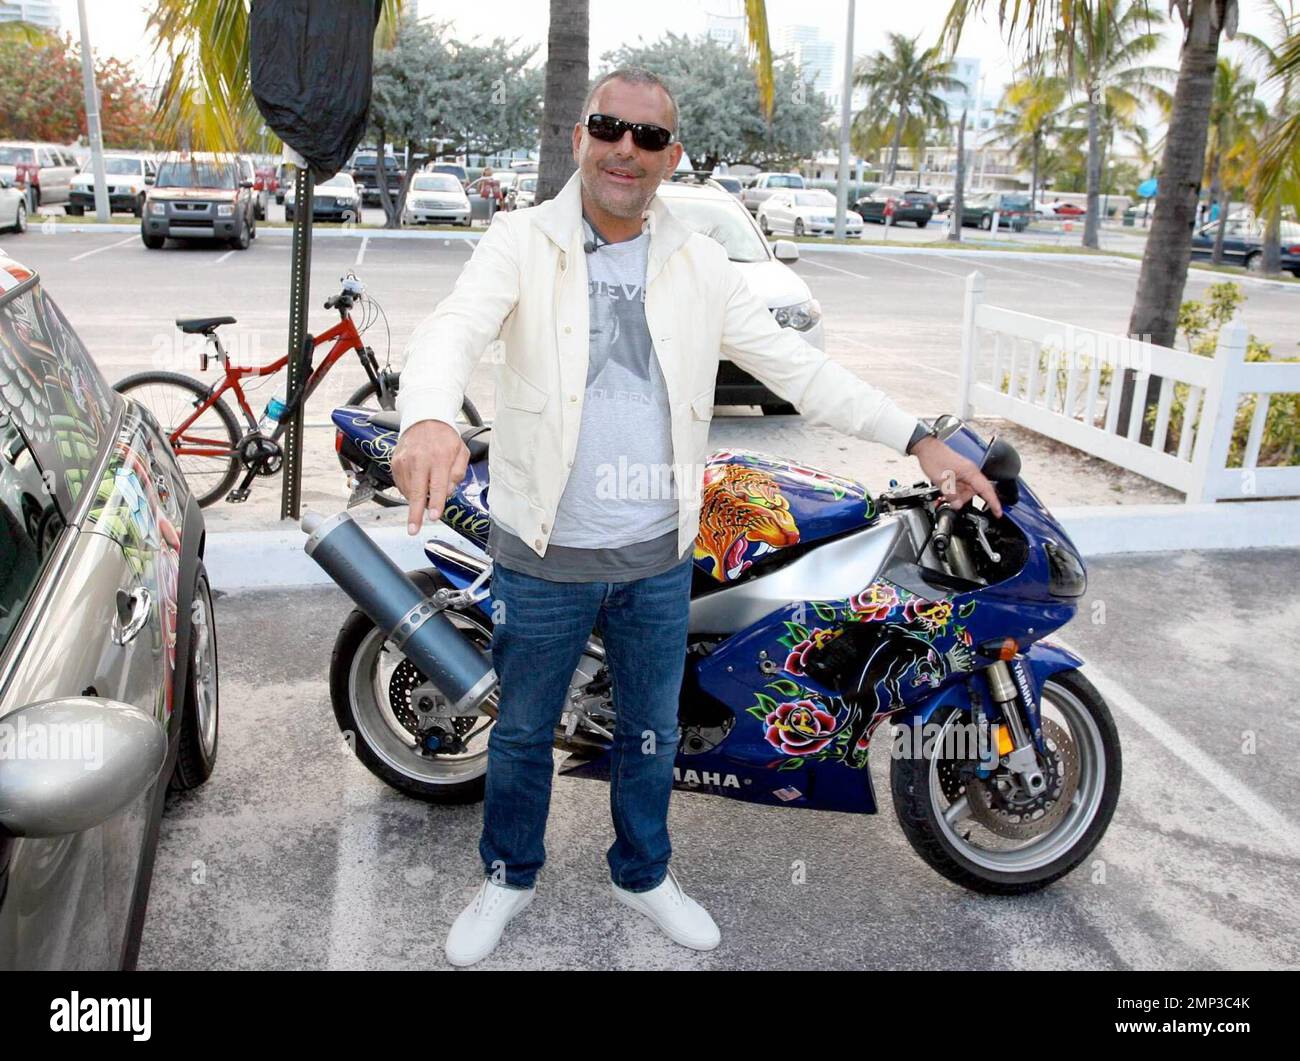 Fashion guru Christian Audigier promotes his wine brand at Nikki Beach Club, Miami Beach, FL, 4/12/08. Stock Photo